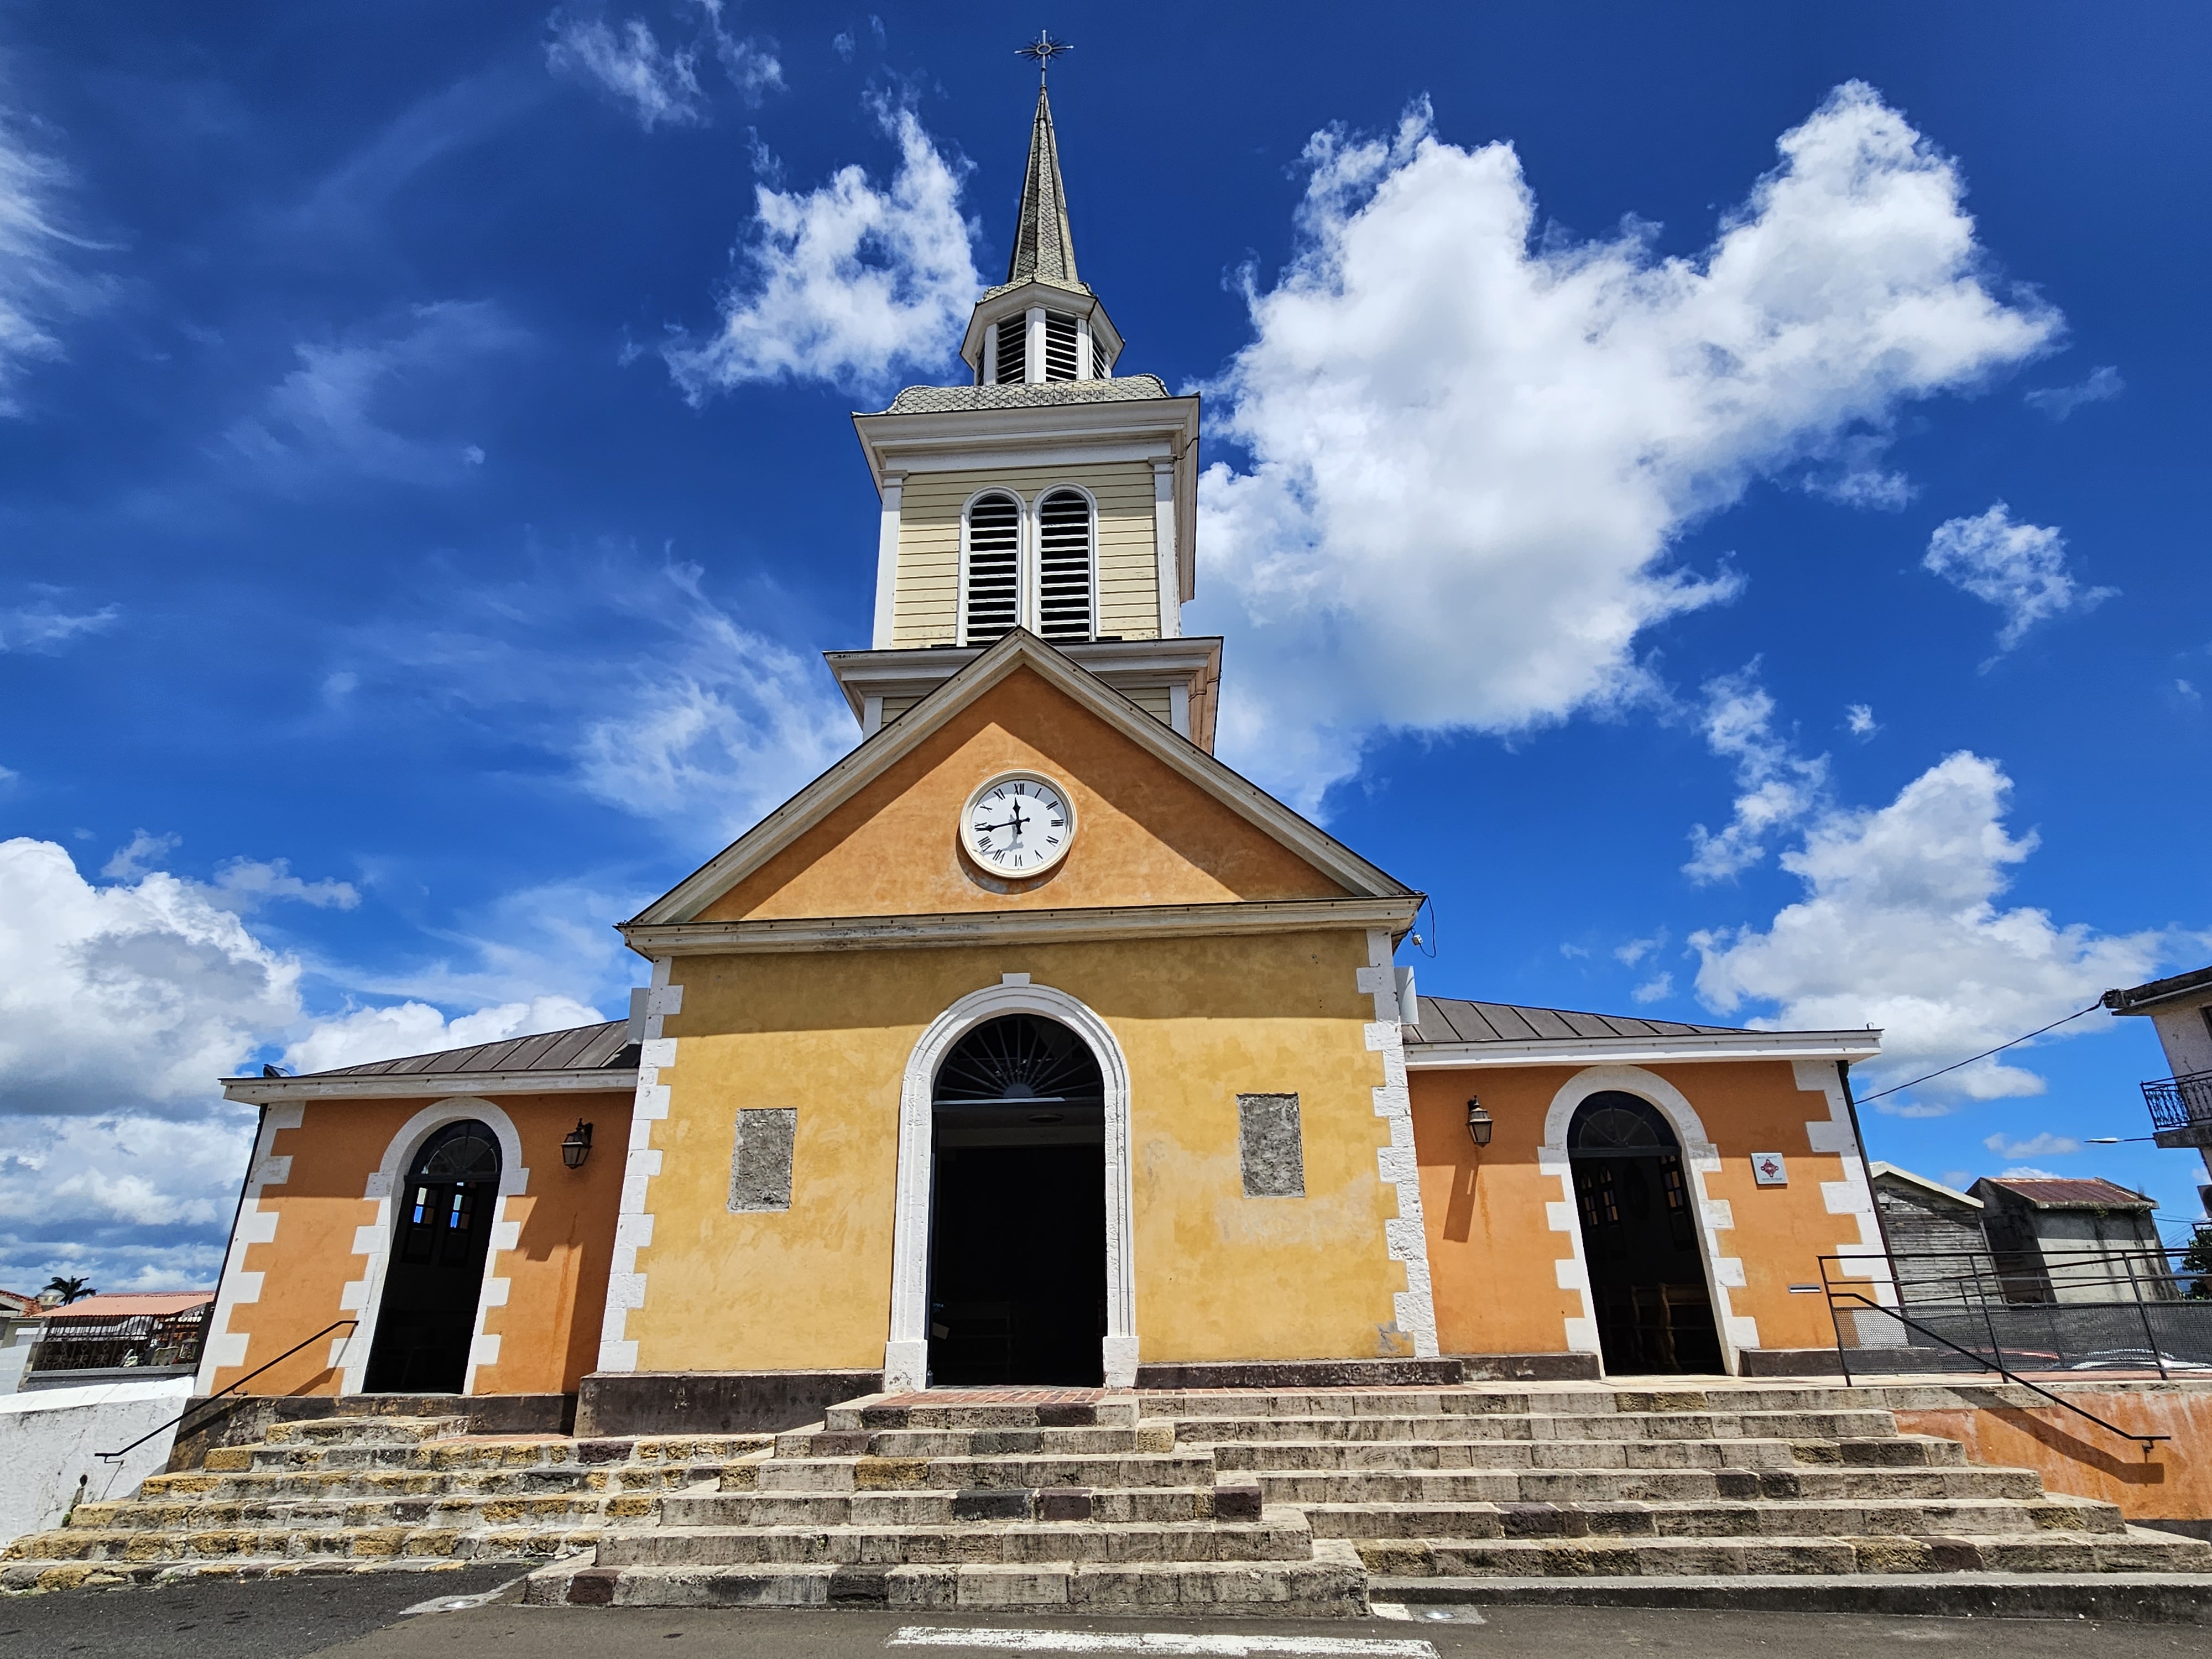     L'évêché réagit aux propos tenus lors d'une homélie à la paroisse des Trois-Îlets

